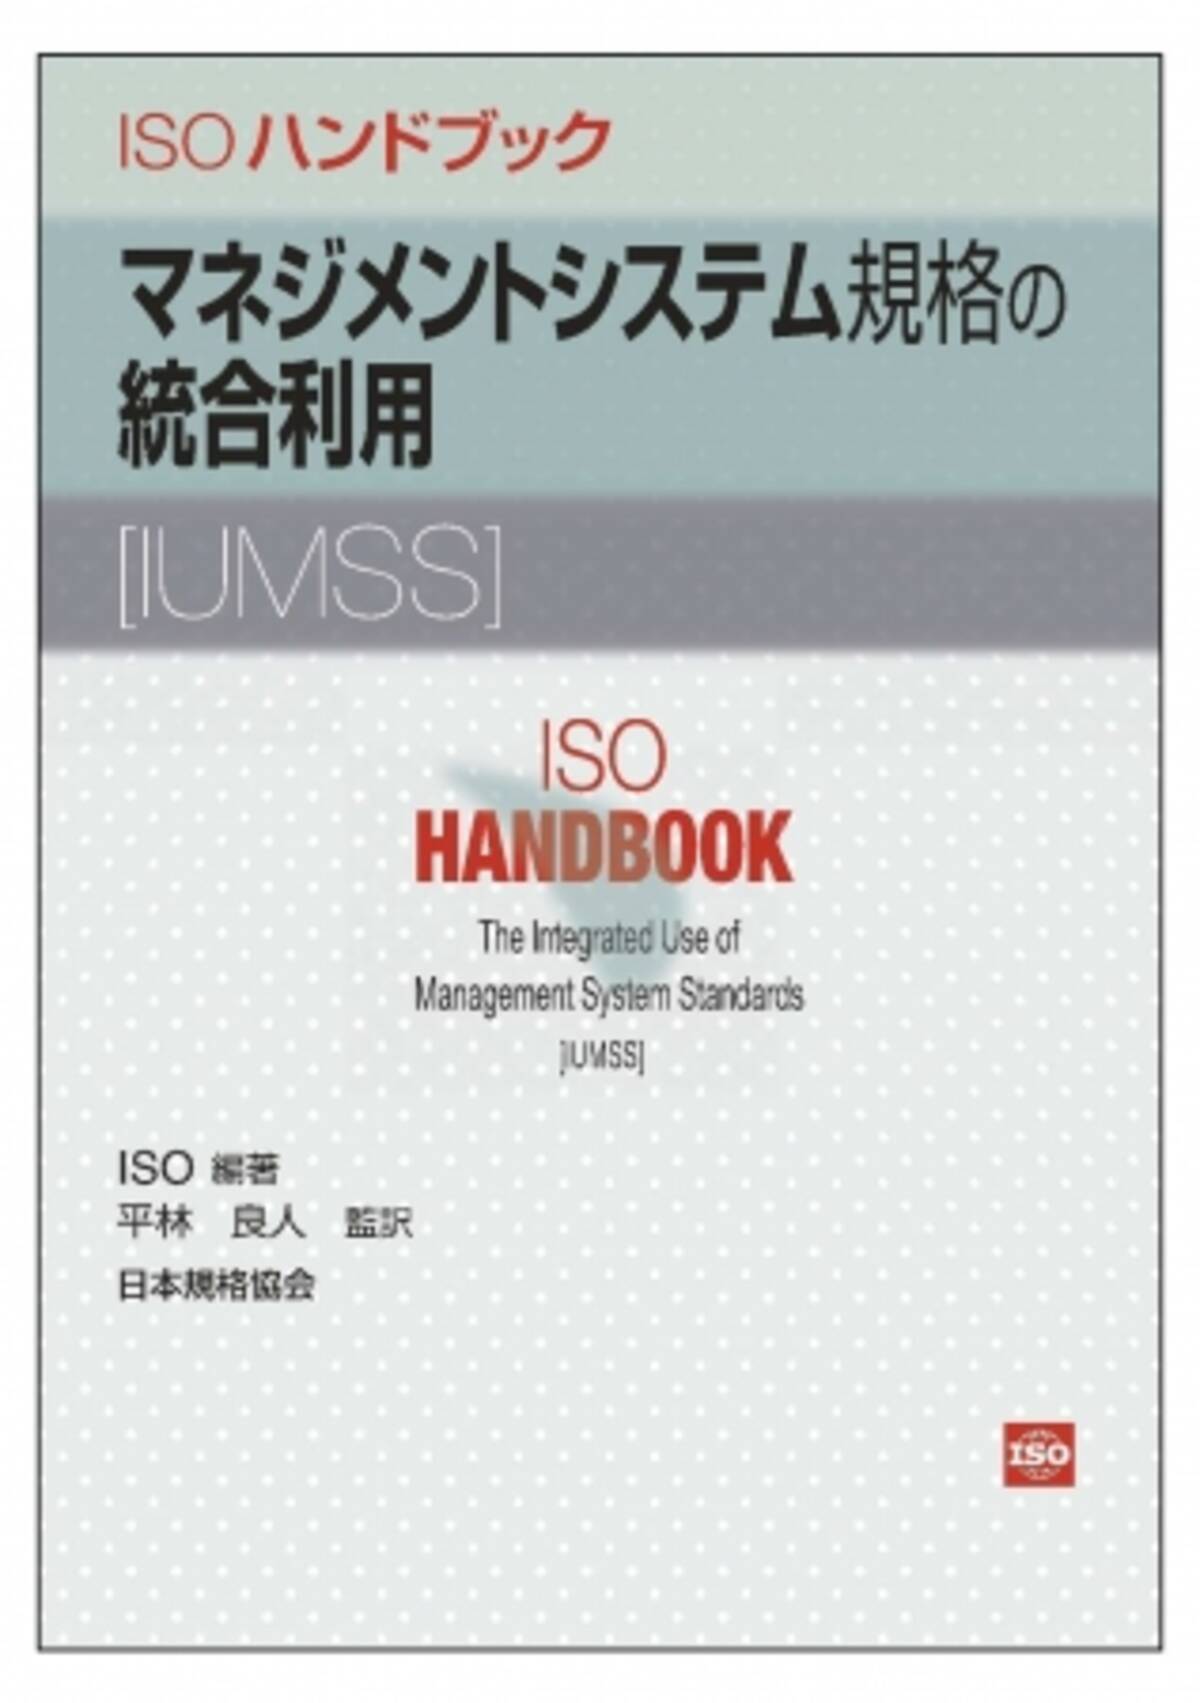 新刊書籍 統合マネジメントシステムの実施に関するisoのオフィシャルブックの翻訳版 Isoハンドブックマネジメントシステム規格の統合利用 Iumss を発行 19年11月日 エキサイトニュース